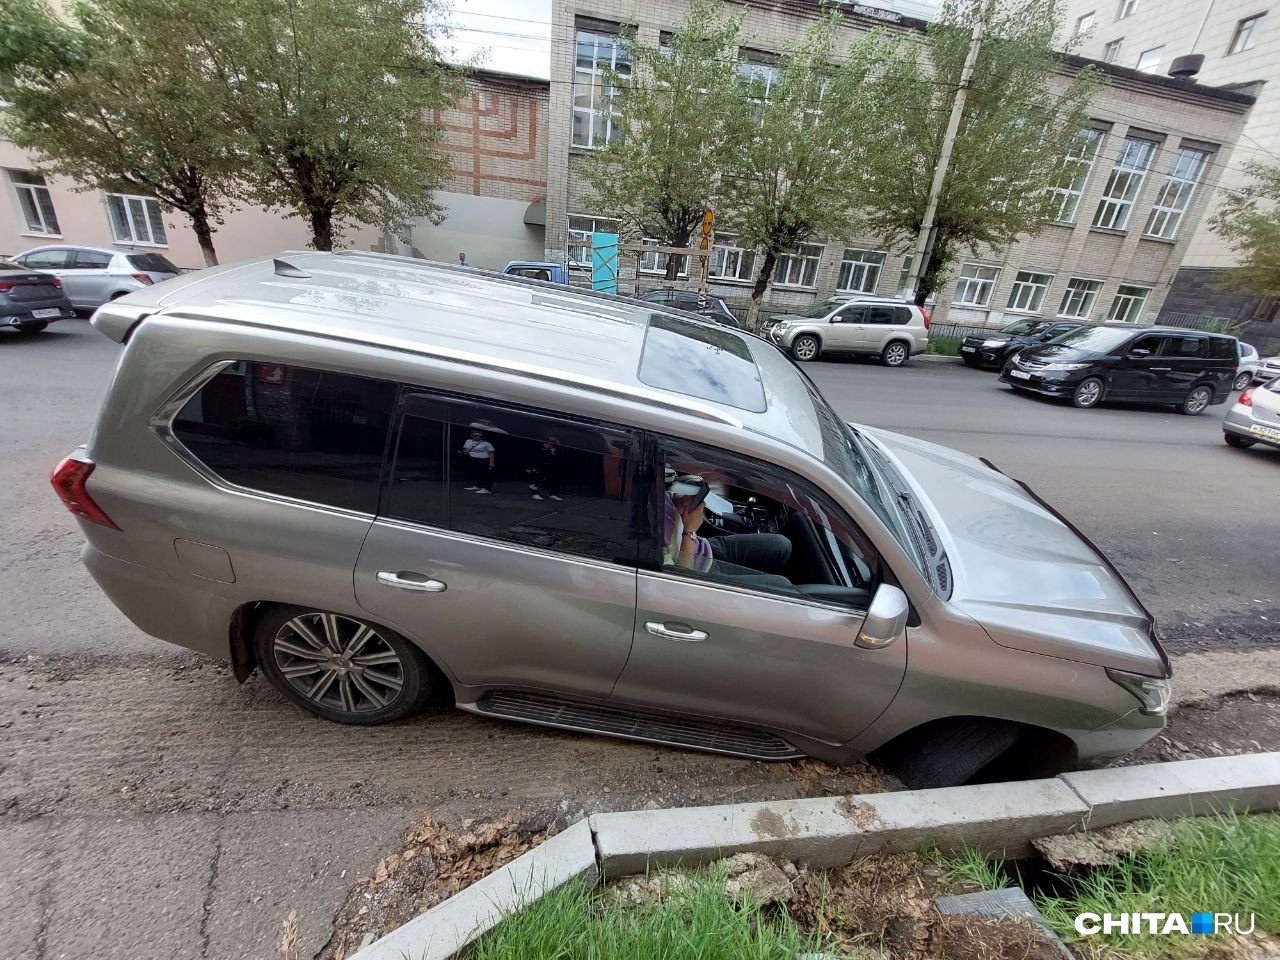 Машина по бампер провалилась в асфальт возле отеля «Монблан» в Чите